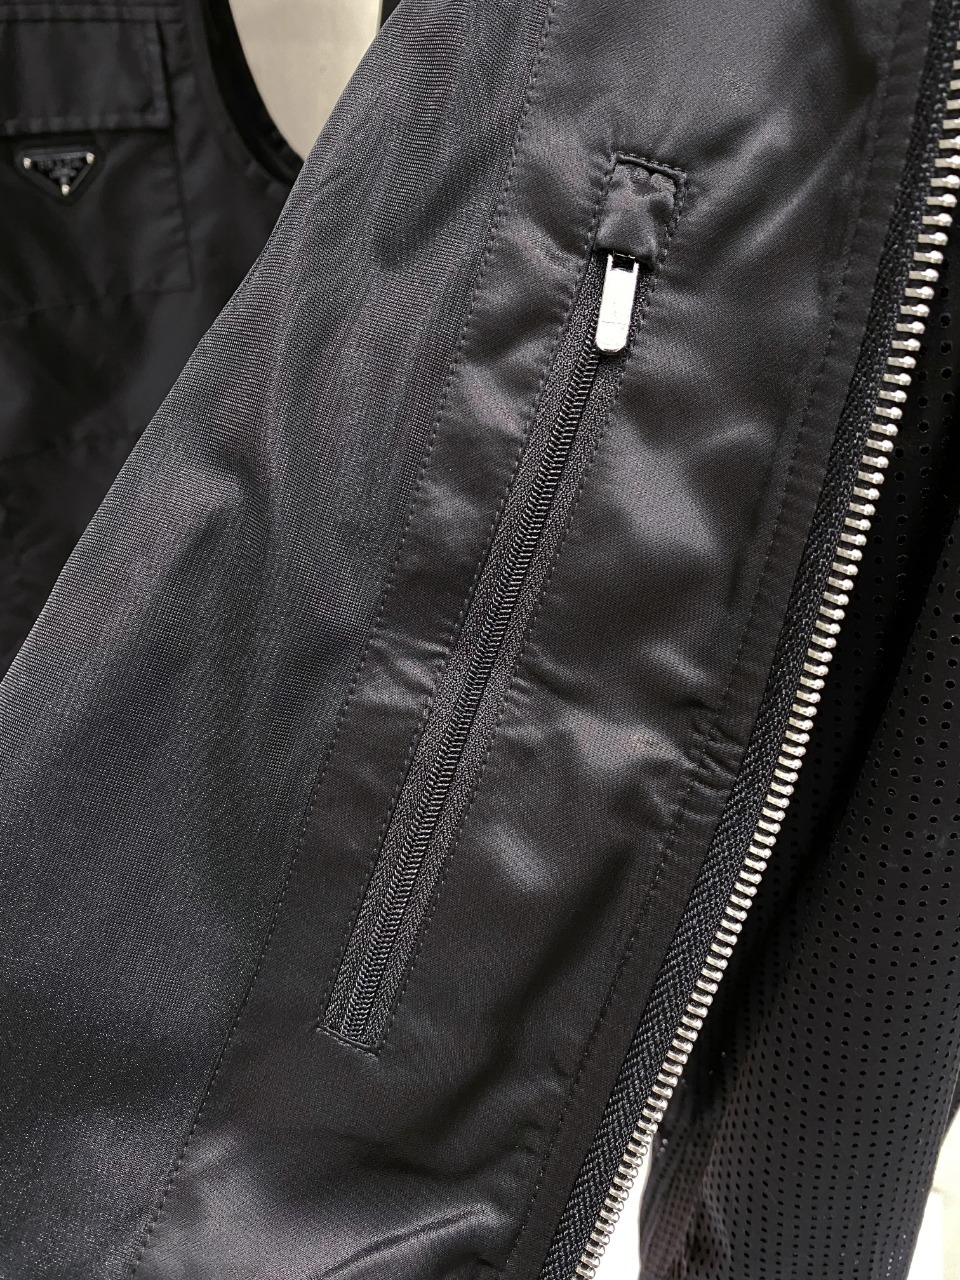 新款TF立领夹克外套穿搭随意切换风格简单又时髦！高端定制复合布面料手感比以往做的要柔软的多舒适度高原厂五